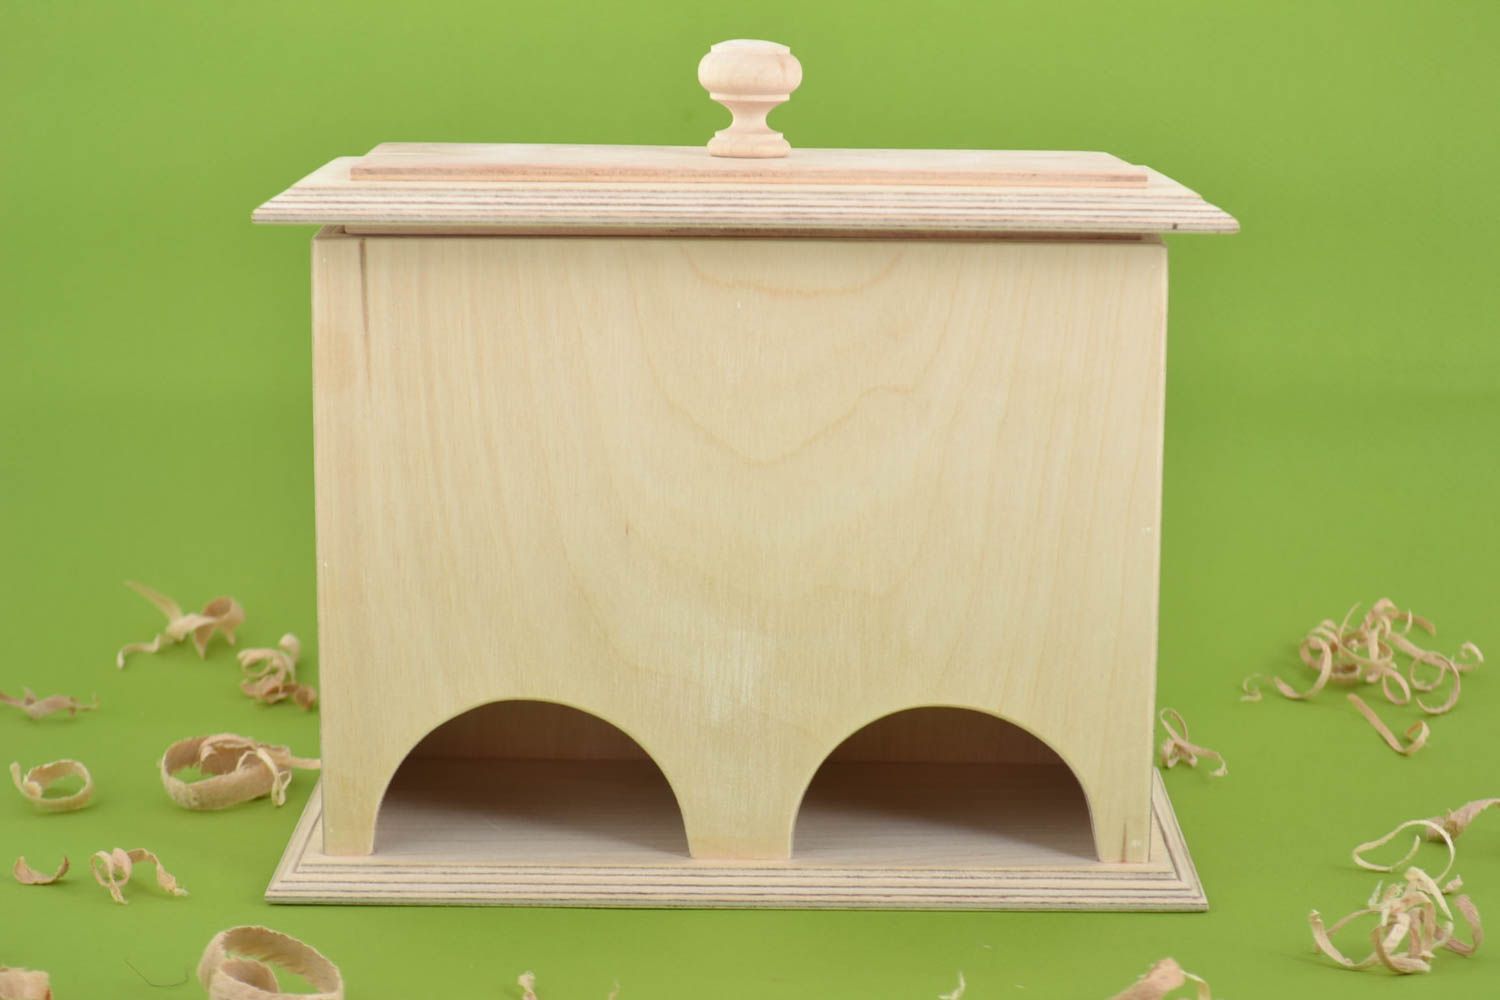 Beautiful handmade wooden blank box wooden tea bag box art materials gift ideas photo 1